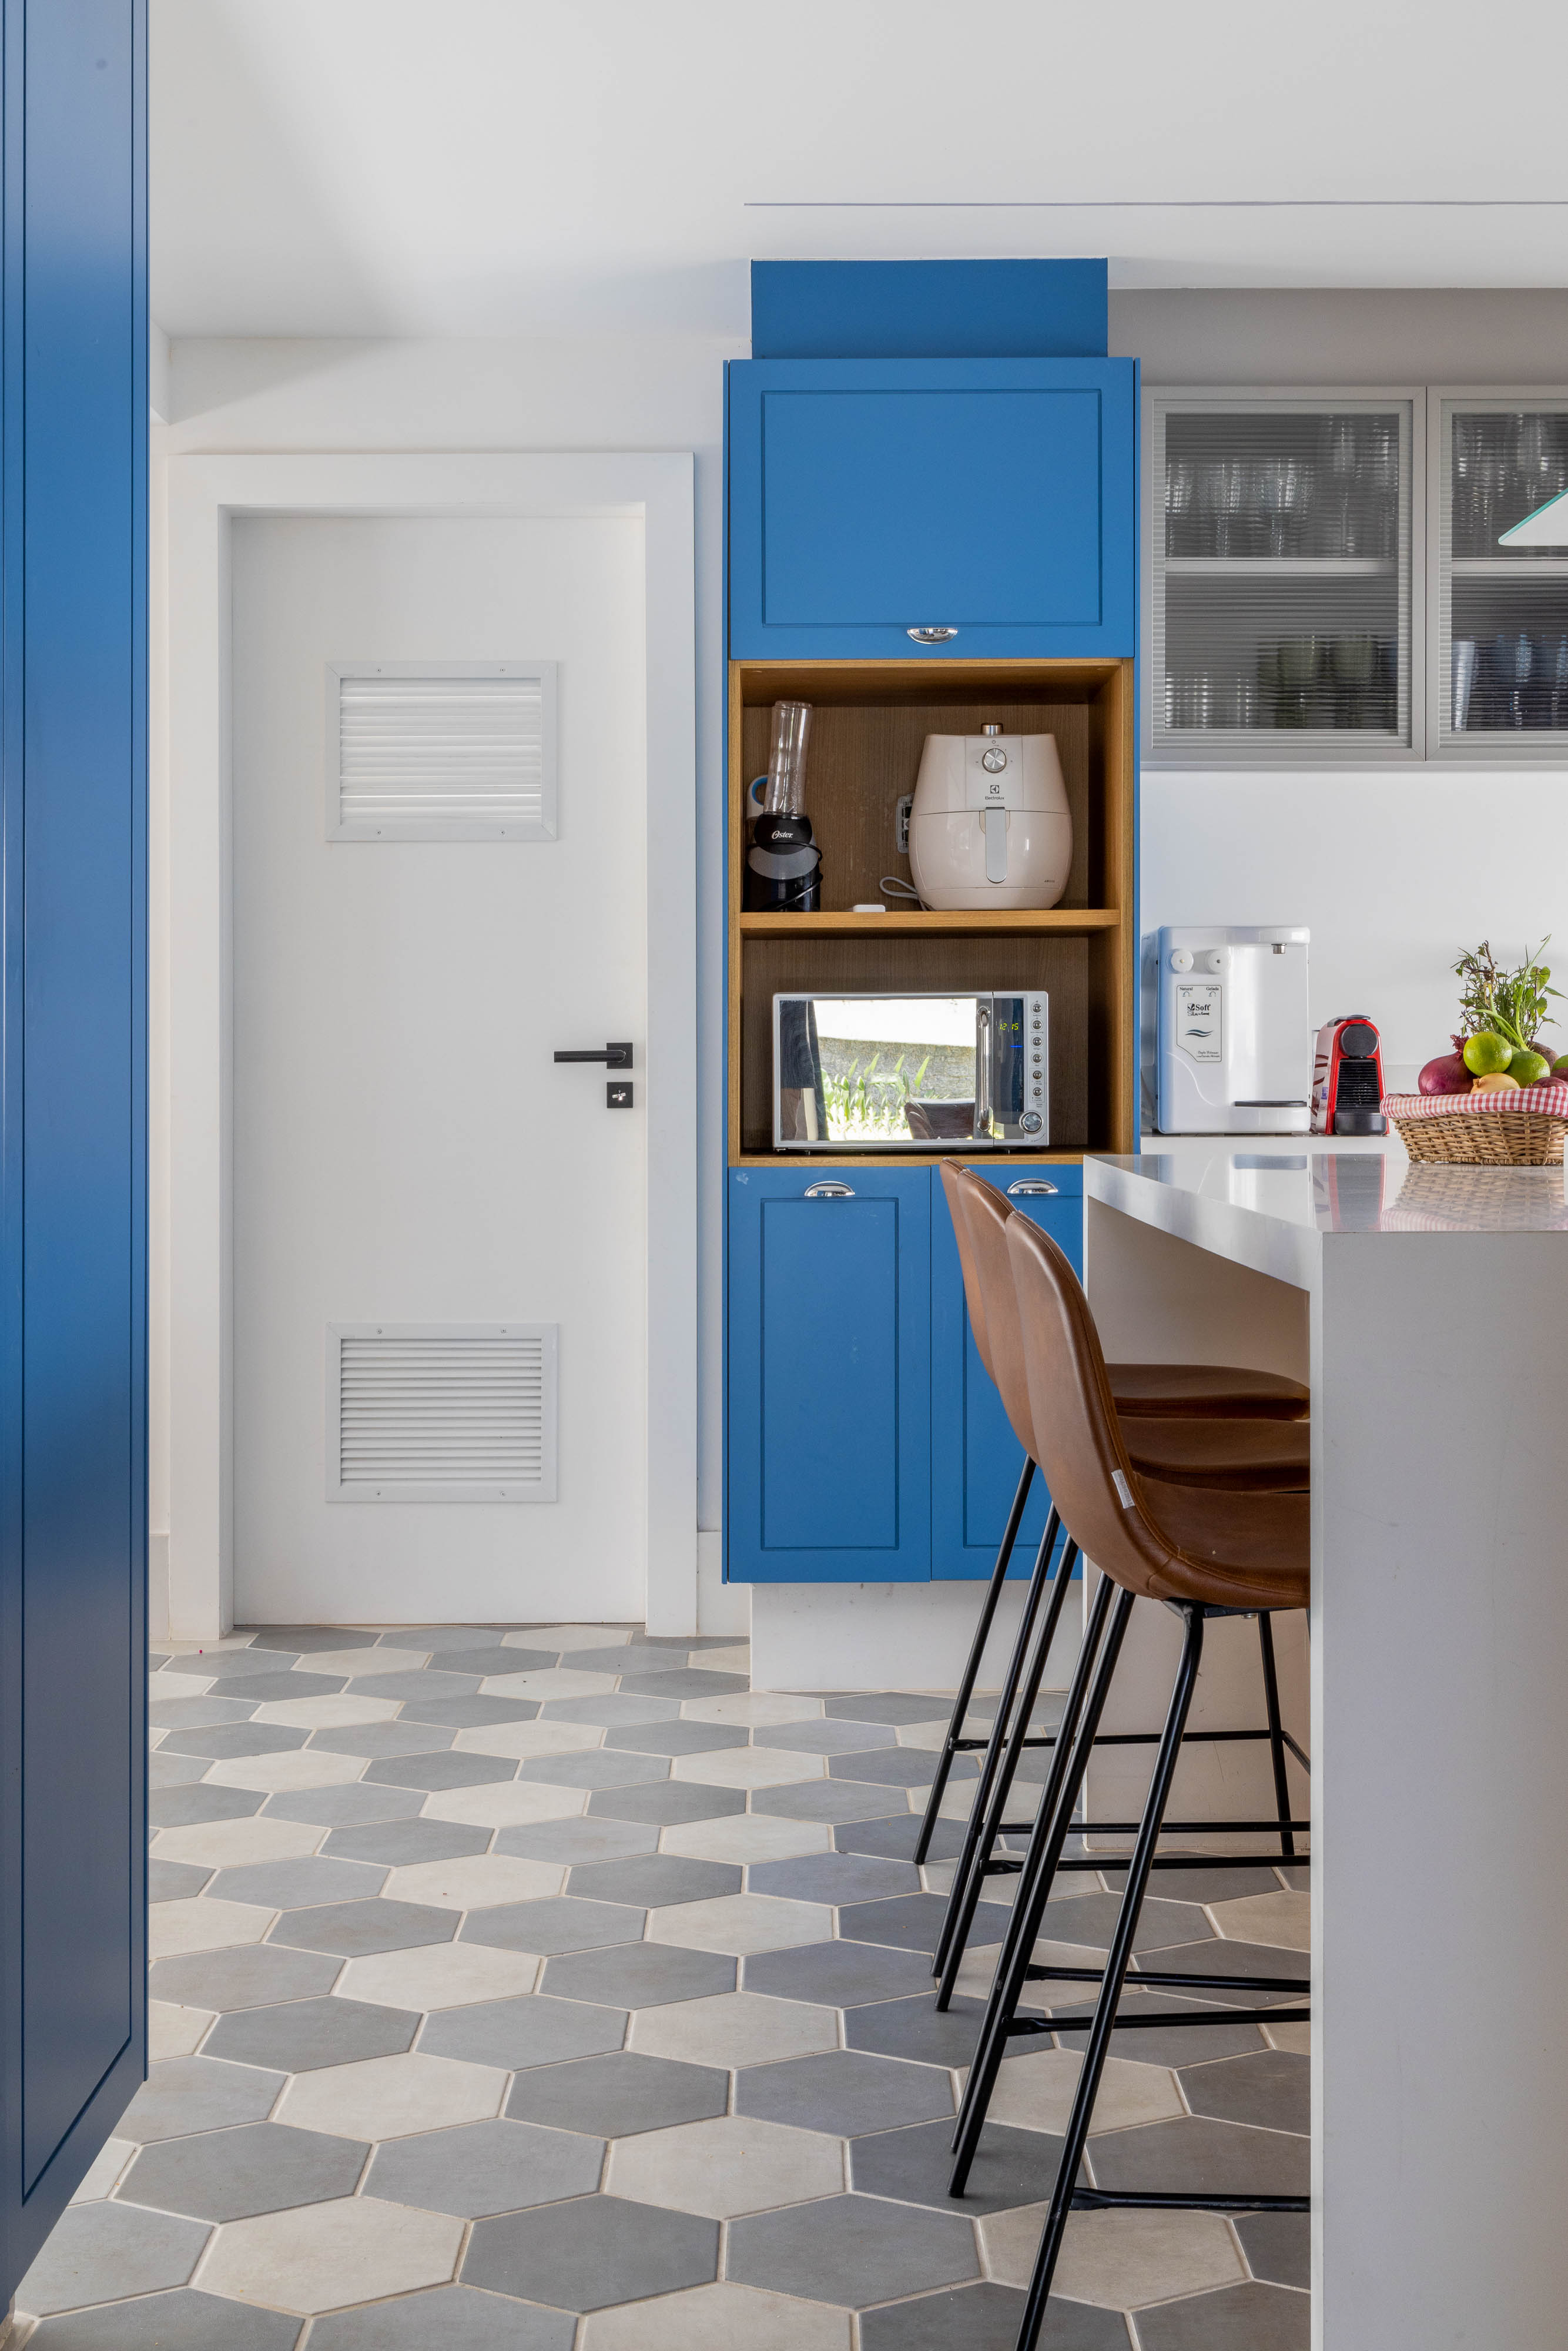 Cozinha em tons de azul e madeira é o destaque desta casa no Rio